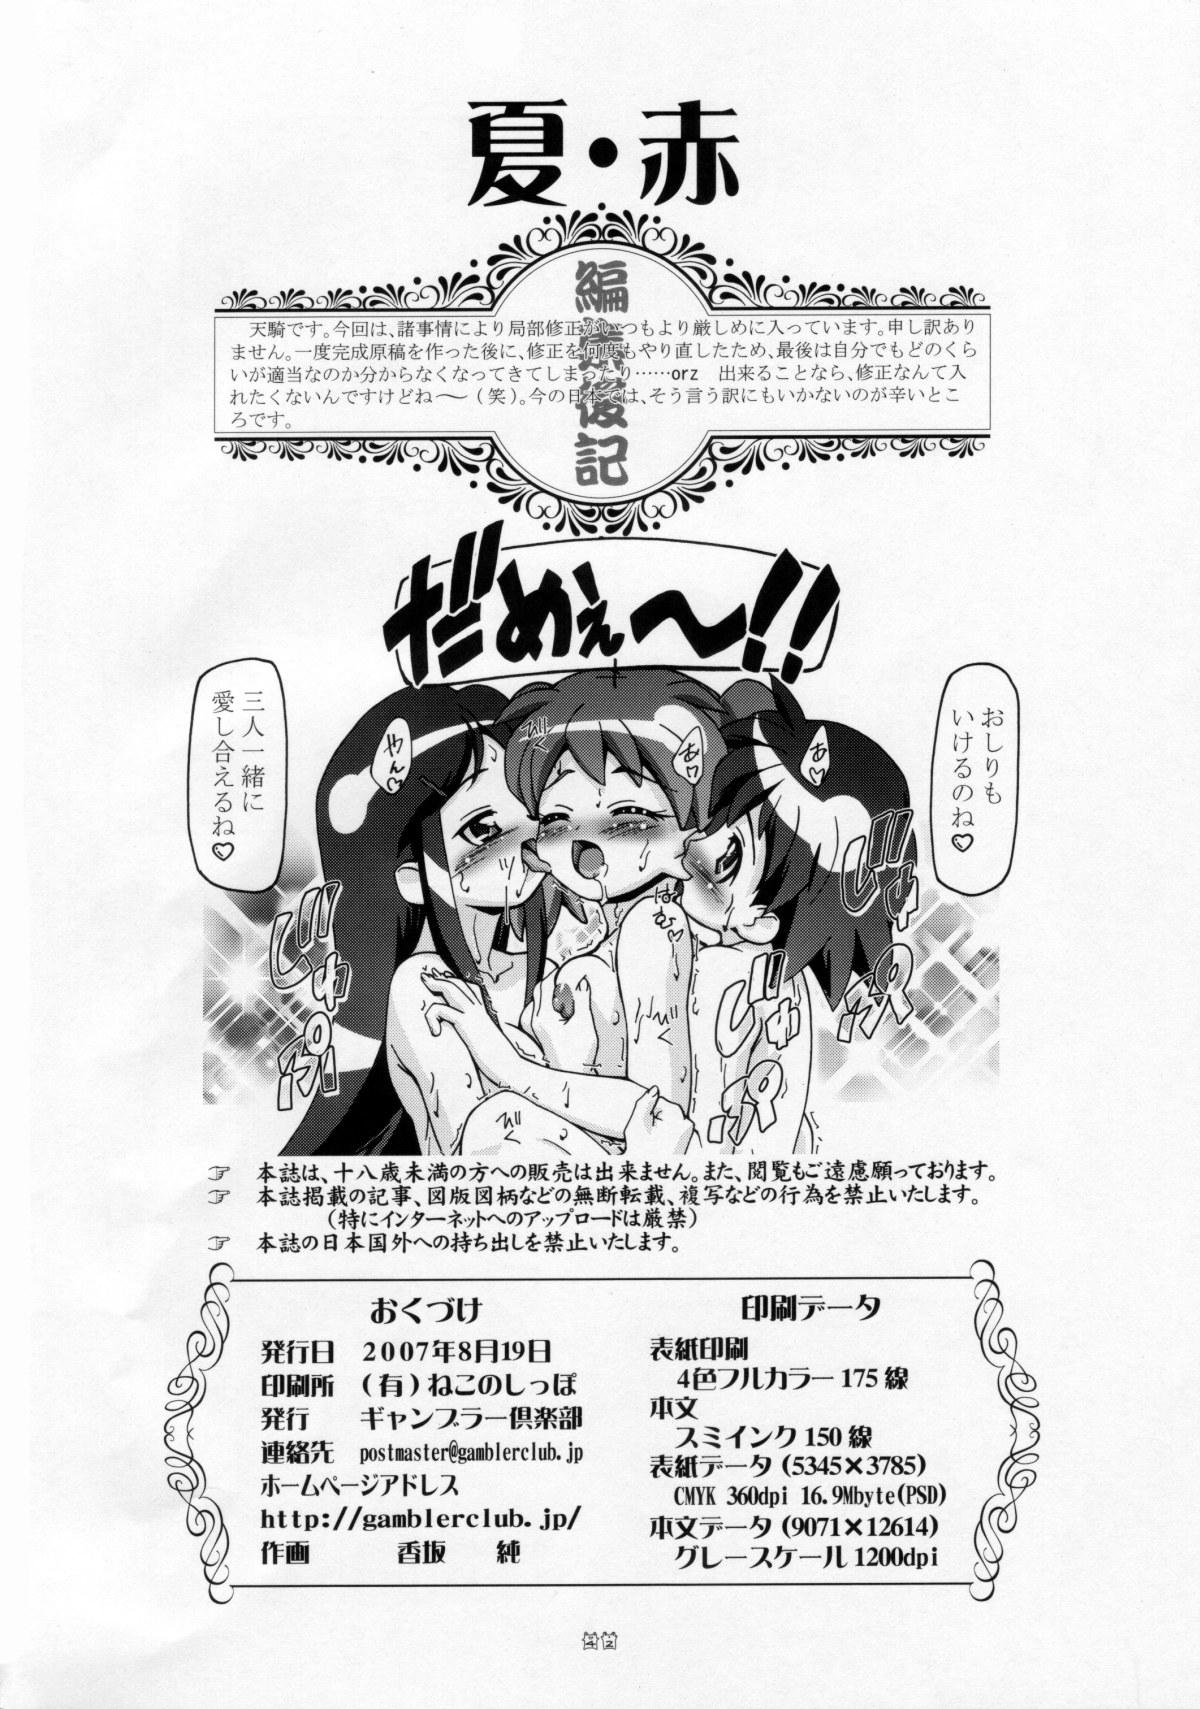 Oriental Natsu Aka - Summer Red - Keroro gunsou Flagra - Page 42